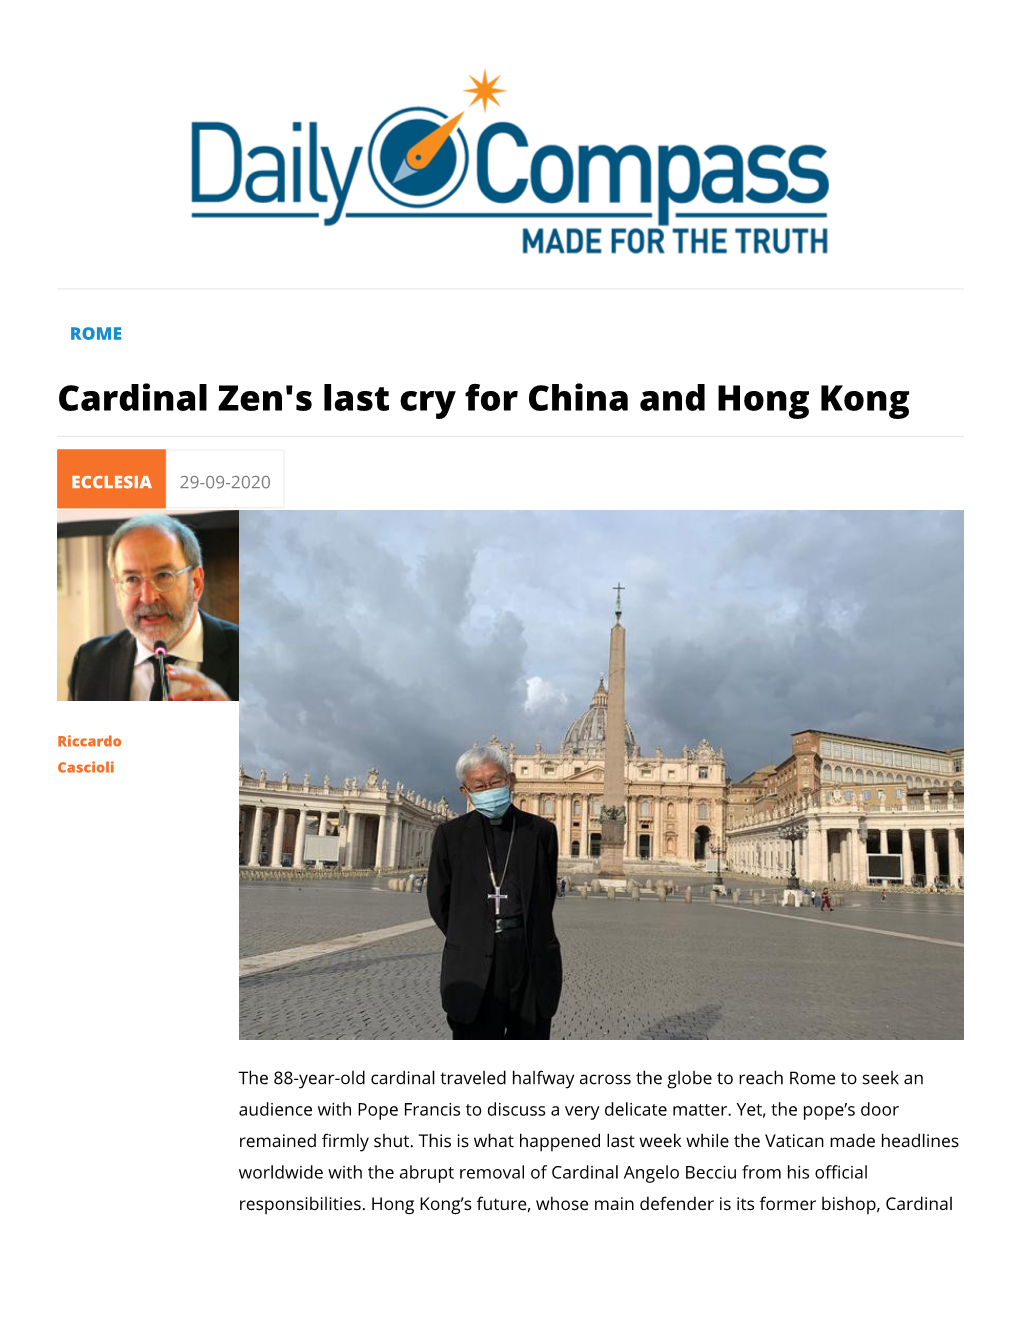 Cardinal Zen's Last Cry for China and Hong Kong